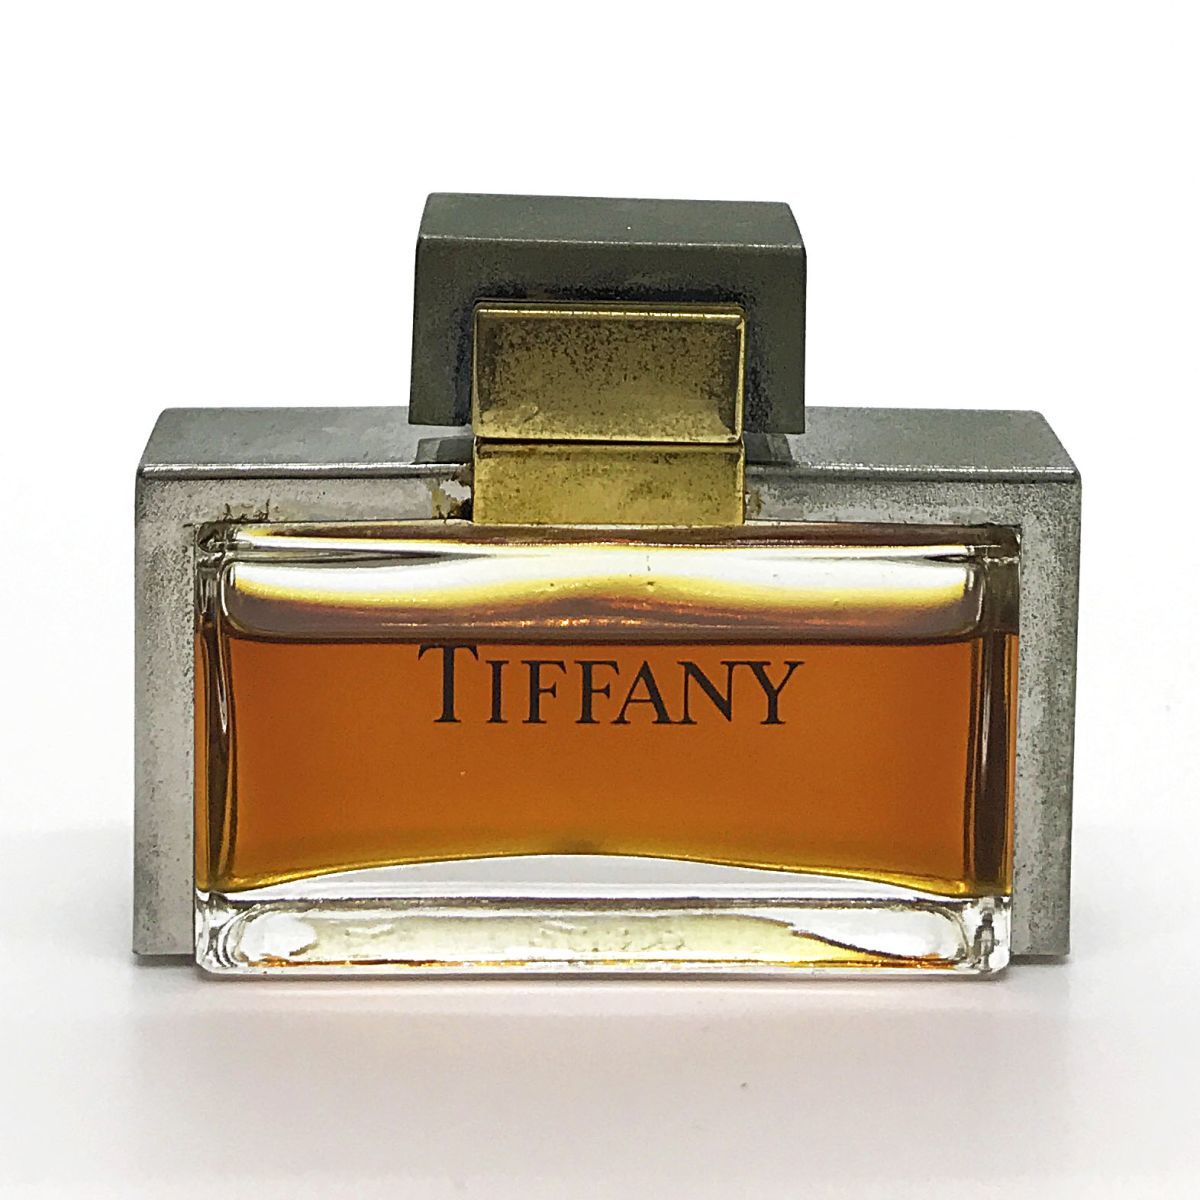 TIFFANY Tiffany Pal fam7.5ml * осталось количество вдоволь стоимость доставки 140 иен 